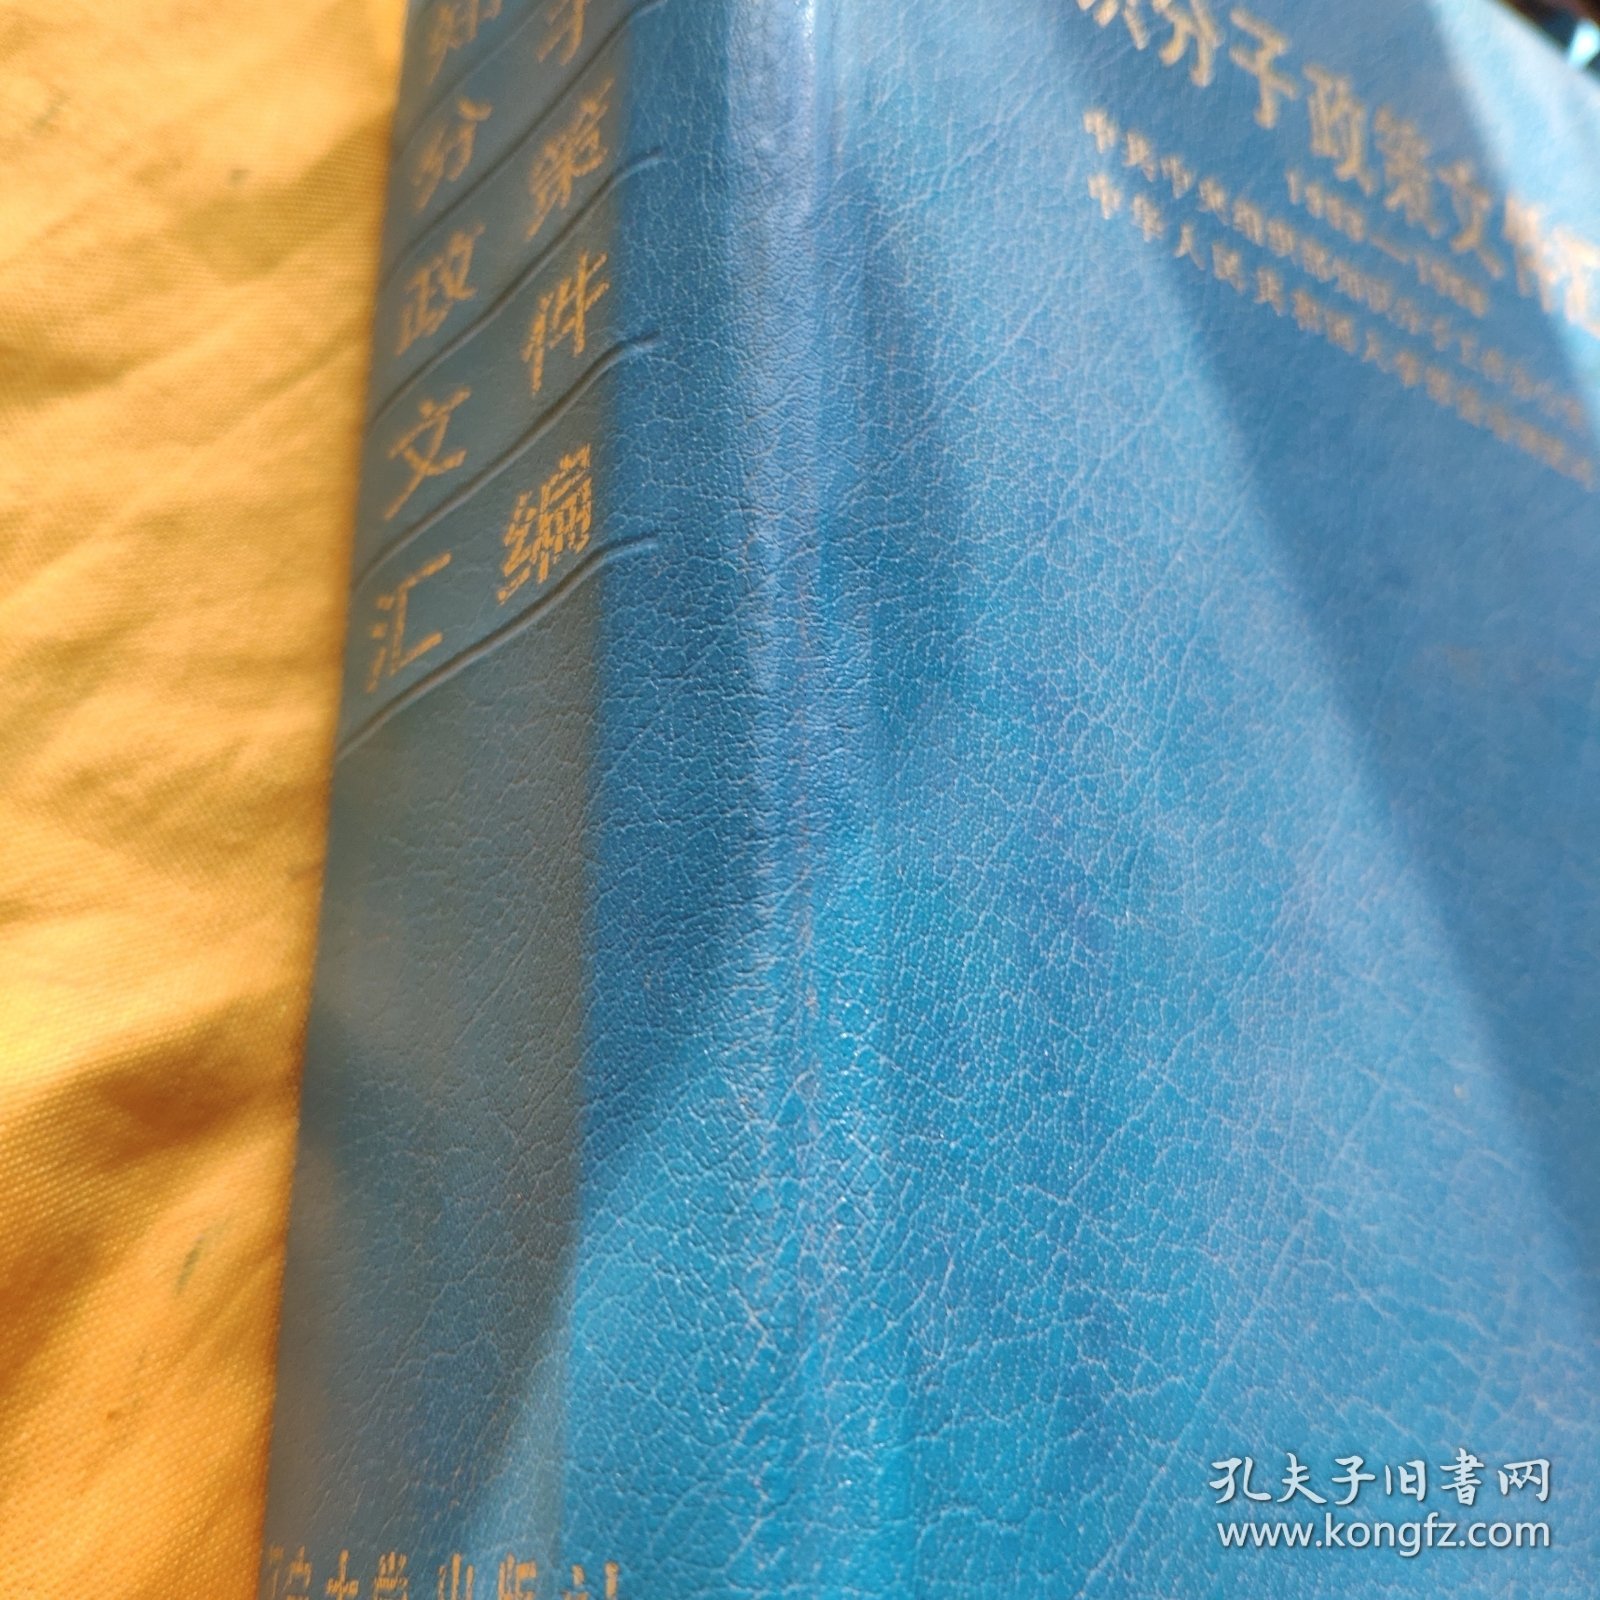 知识分子政策文件汇编1983—1988【精装本】